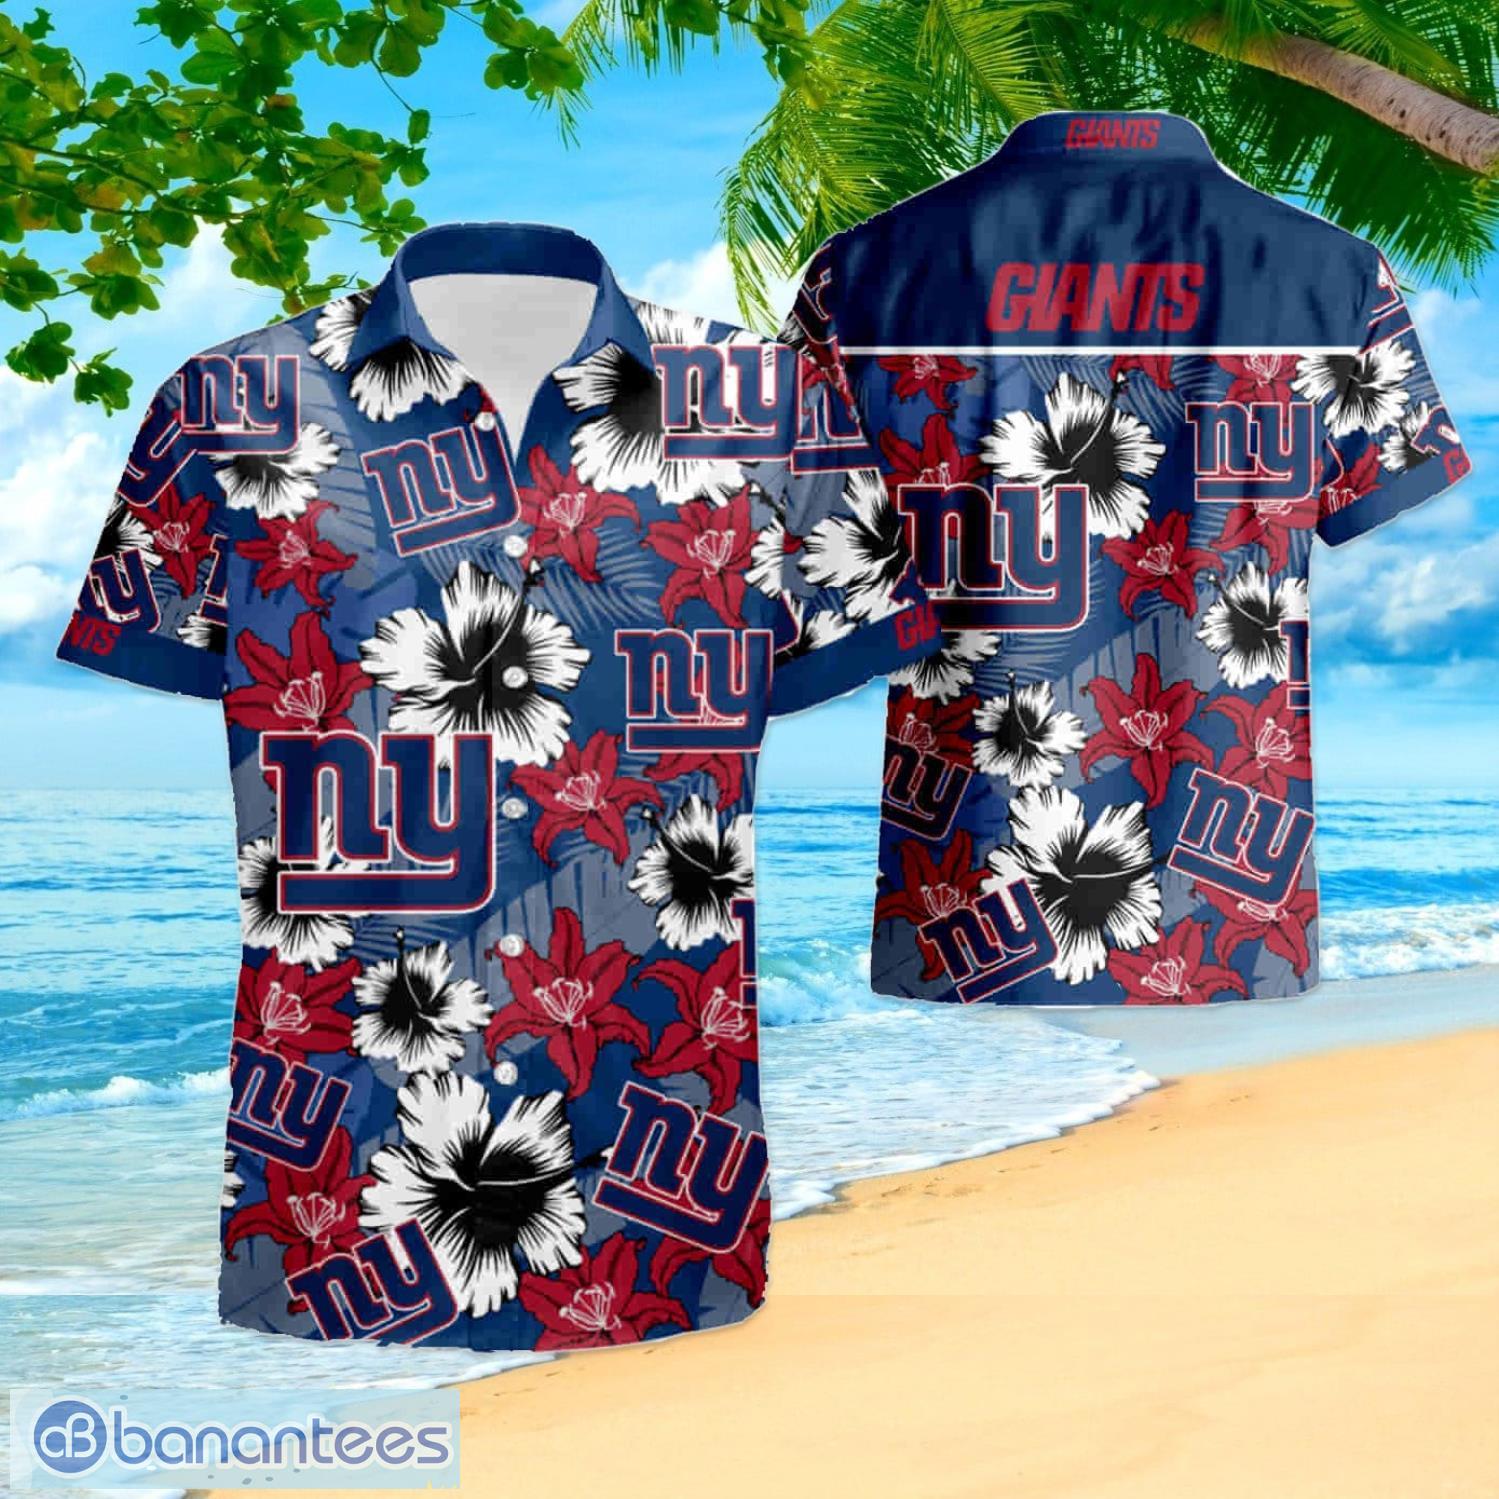 BEST New York Giants NFL Hawaiian Shirt Trends Summer Short Sleeve